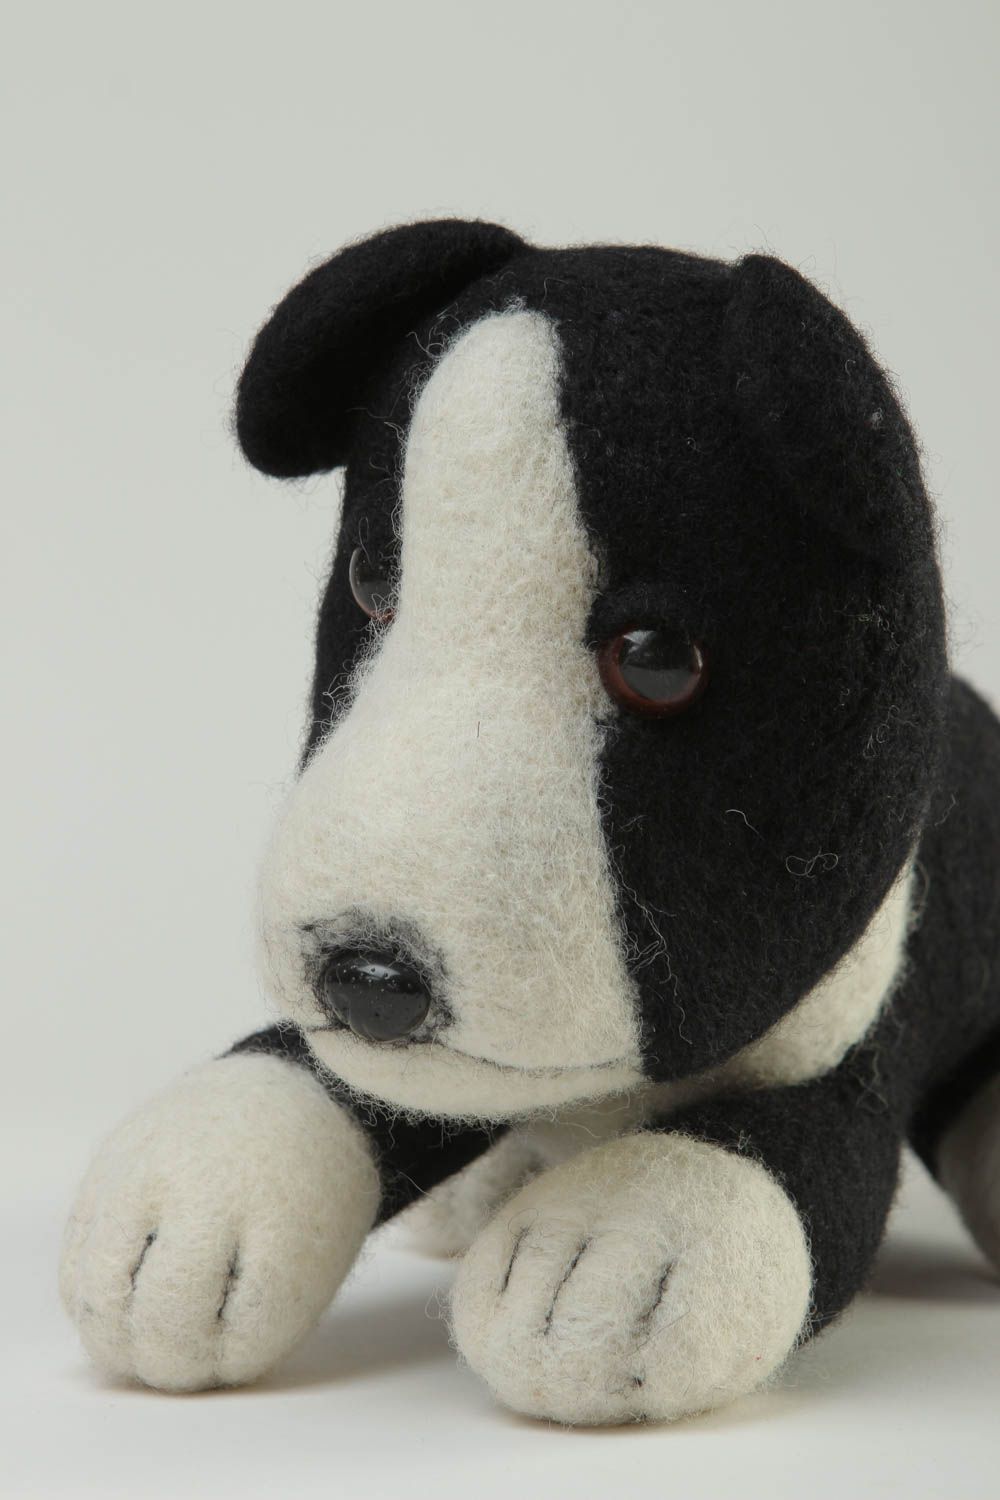 Handmade Spielsachen für Kinder Öko Kinderspielzeug Plüsch Hund schwarz weiß foto 3